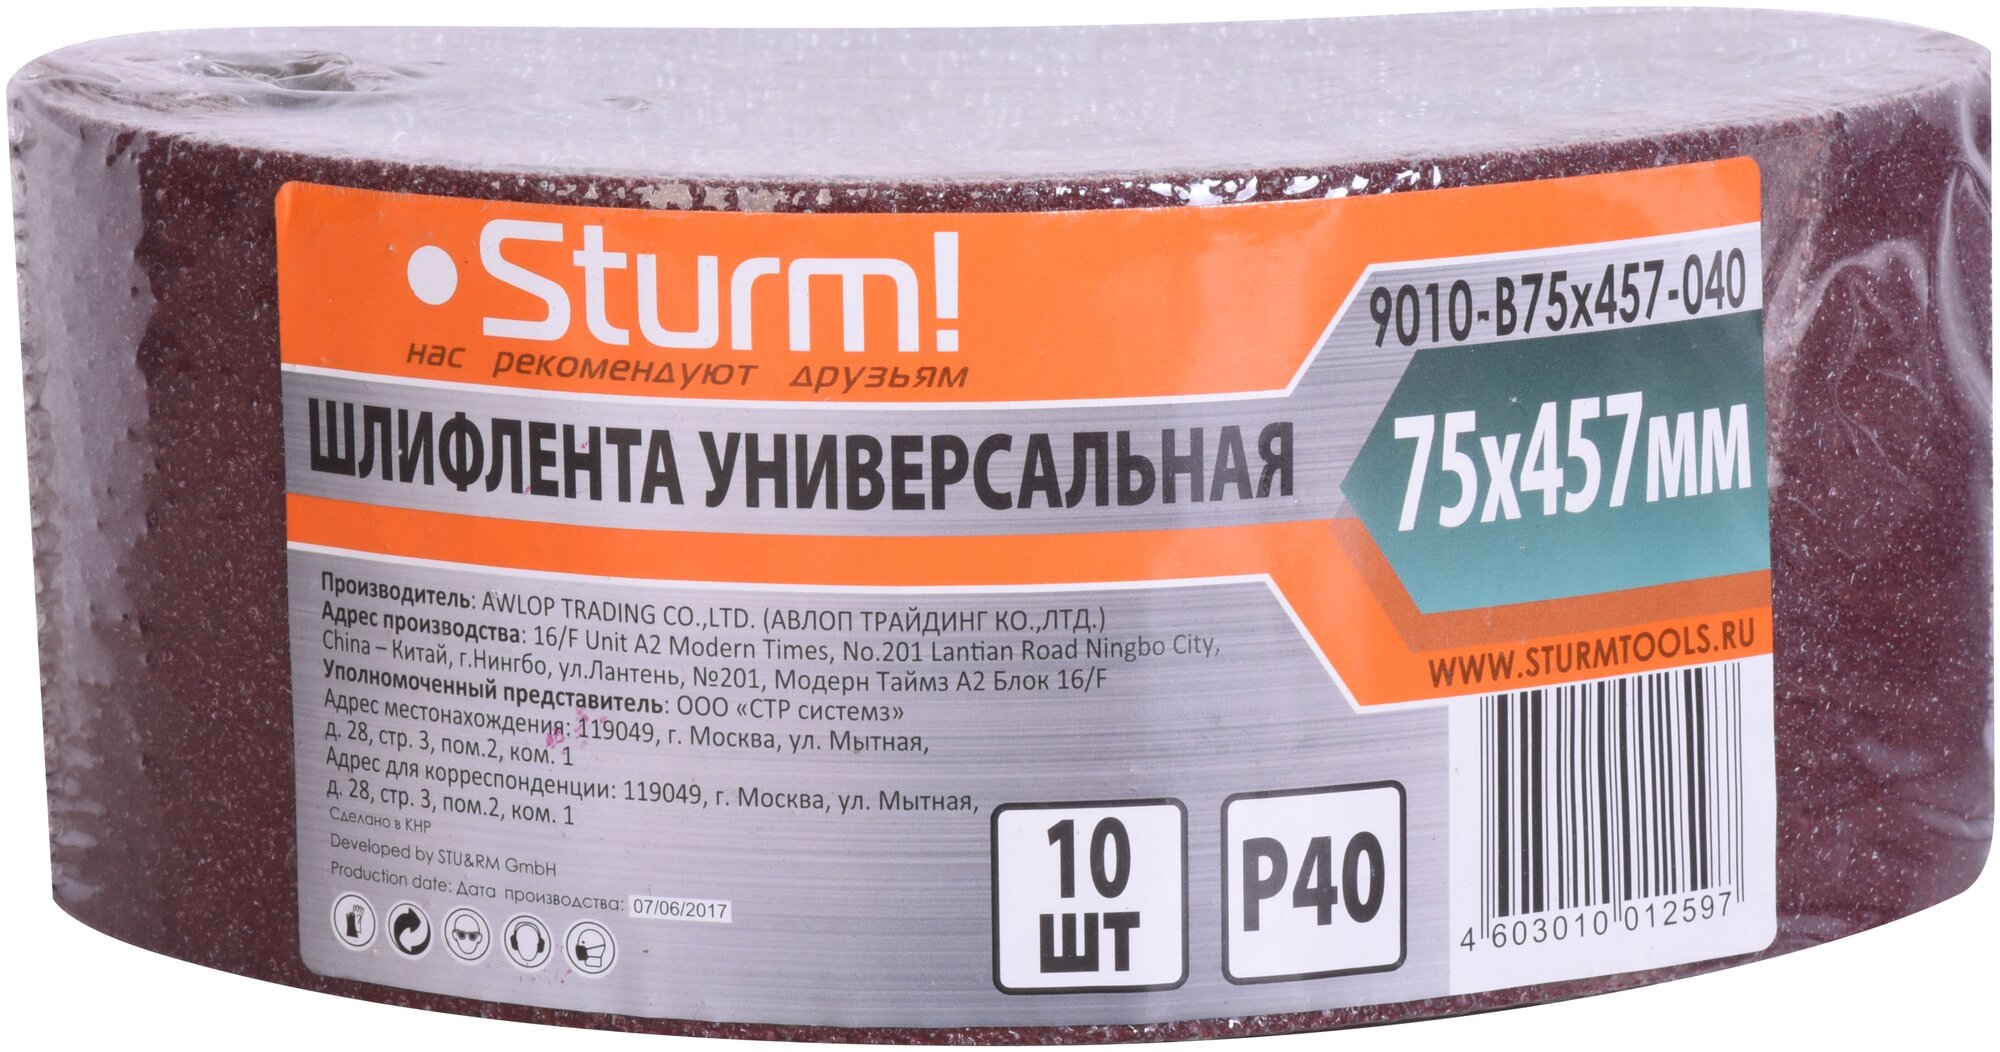 Шлифлента (457х75 мм; зерно 40; 10 шт.) для шлифмашин Sturm 9010-B75x457-040